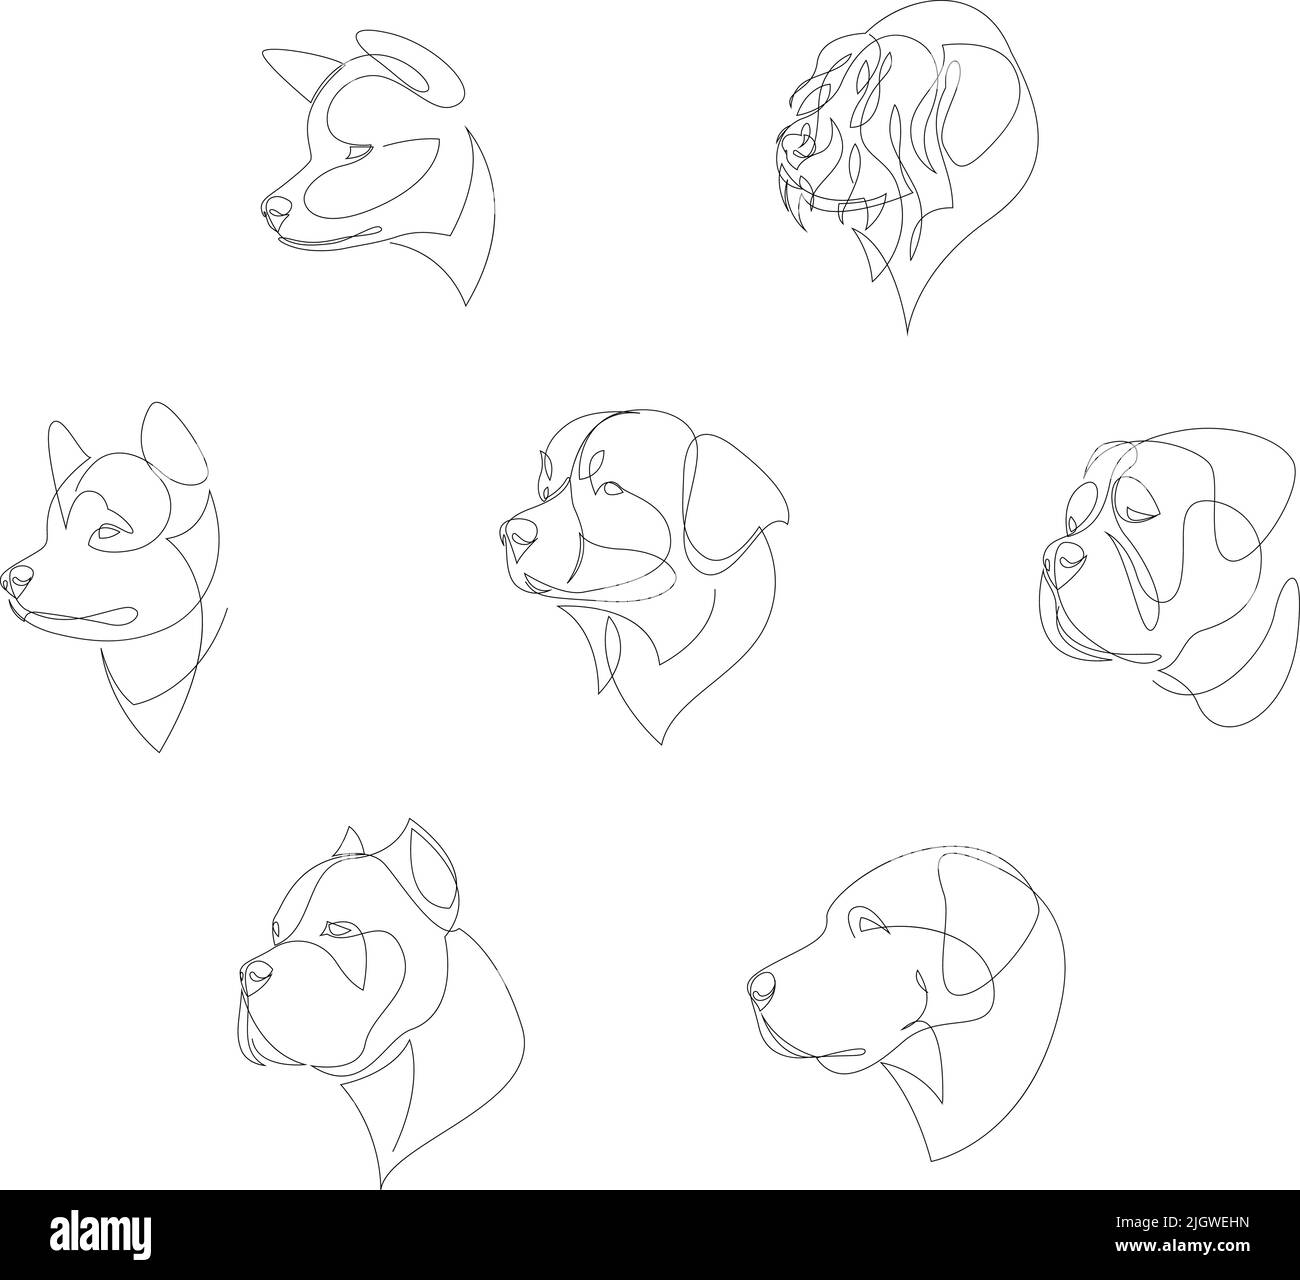 Races de chiens dessinées dans un style minimaliste. Chiens d'une ligne. Illustration vectorielle Illustration de Vecteur